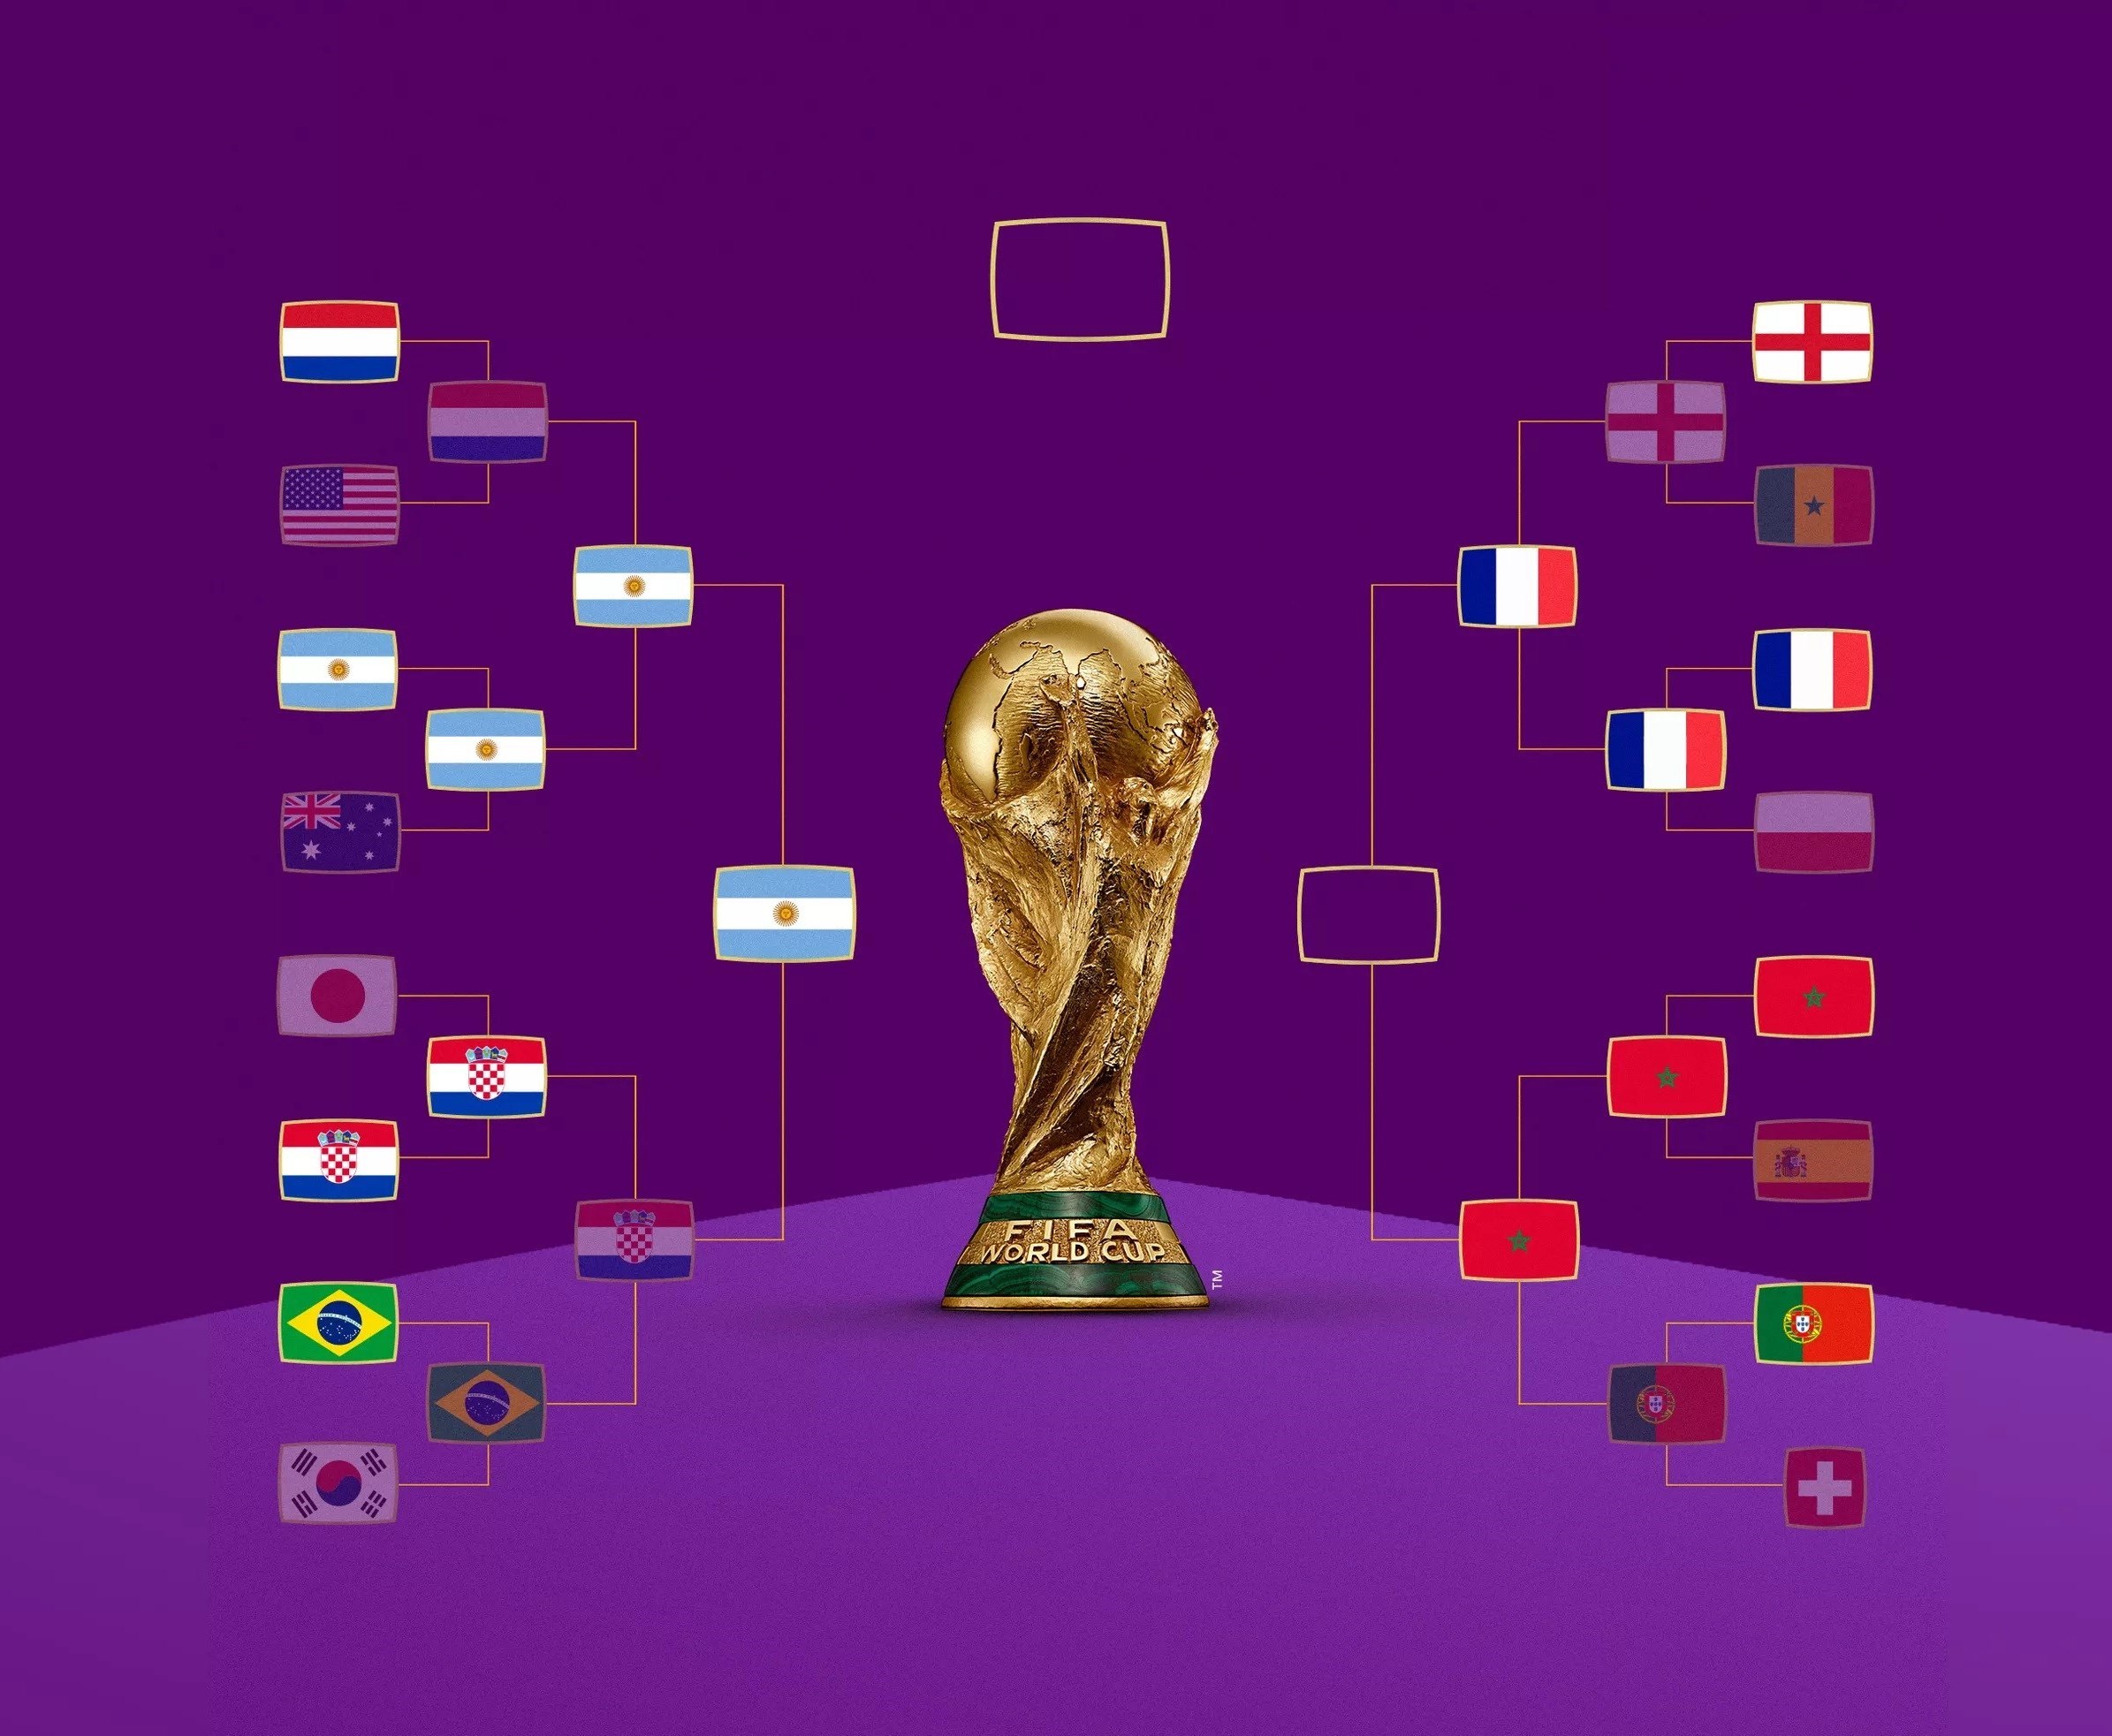 جام جهانی قطر , جام جهانی 2022 قطر , تیم ملی فوتبال فرانسه , تیم ملی فوتبال مراکش , دیدیه دشان ,